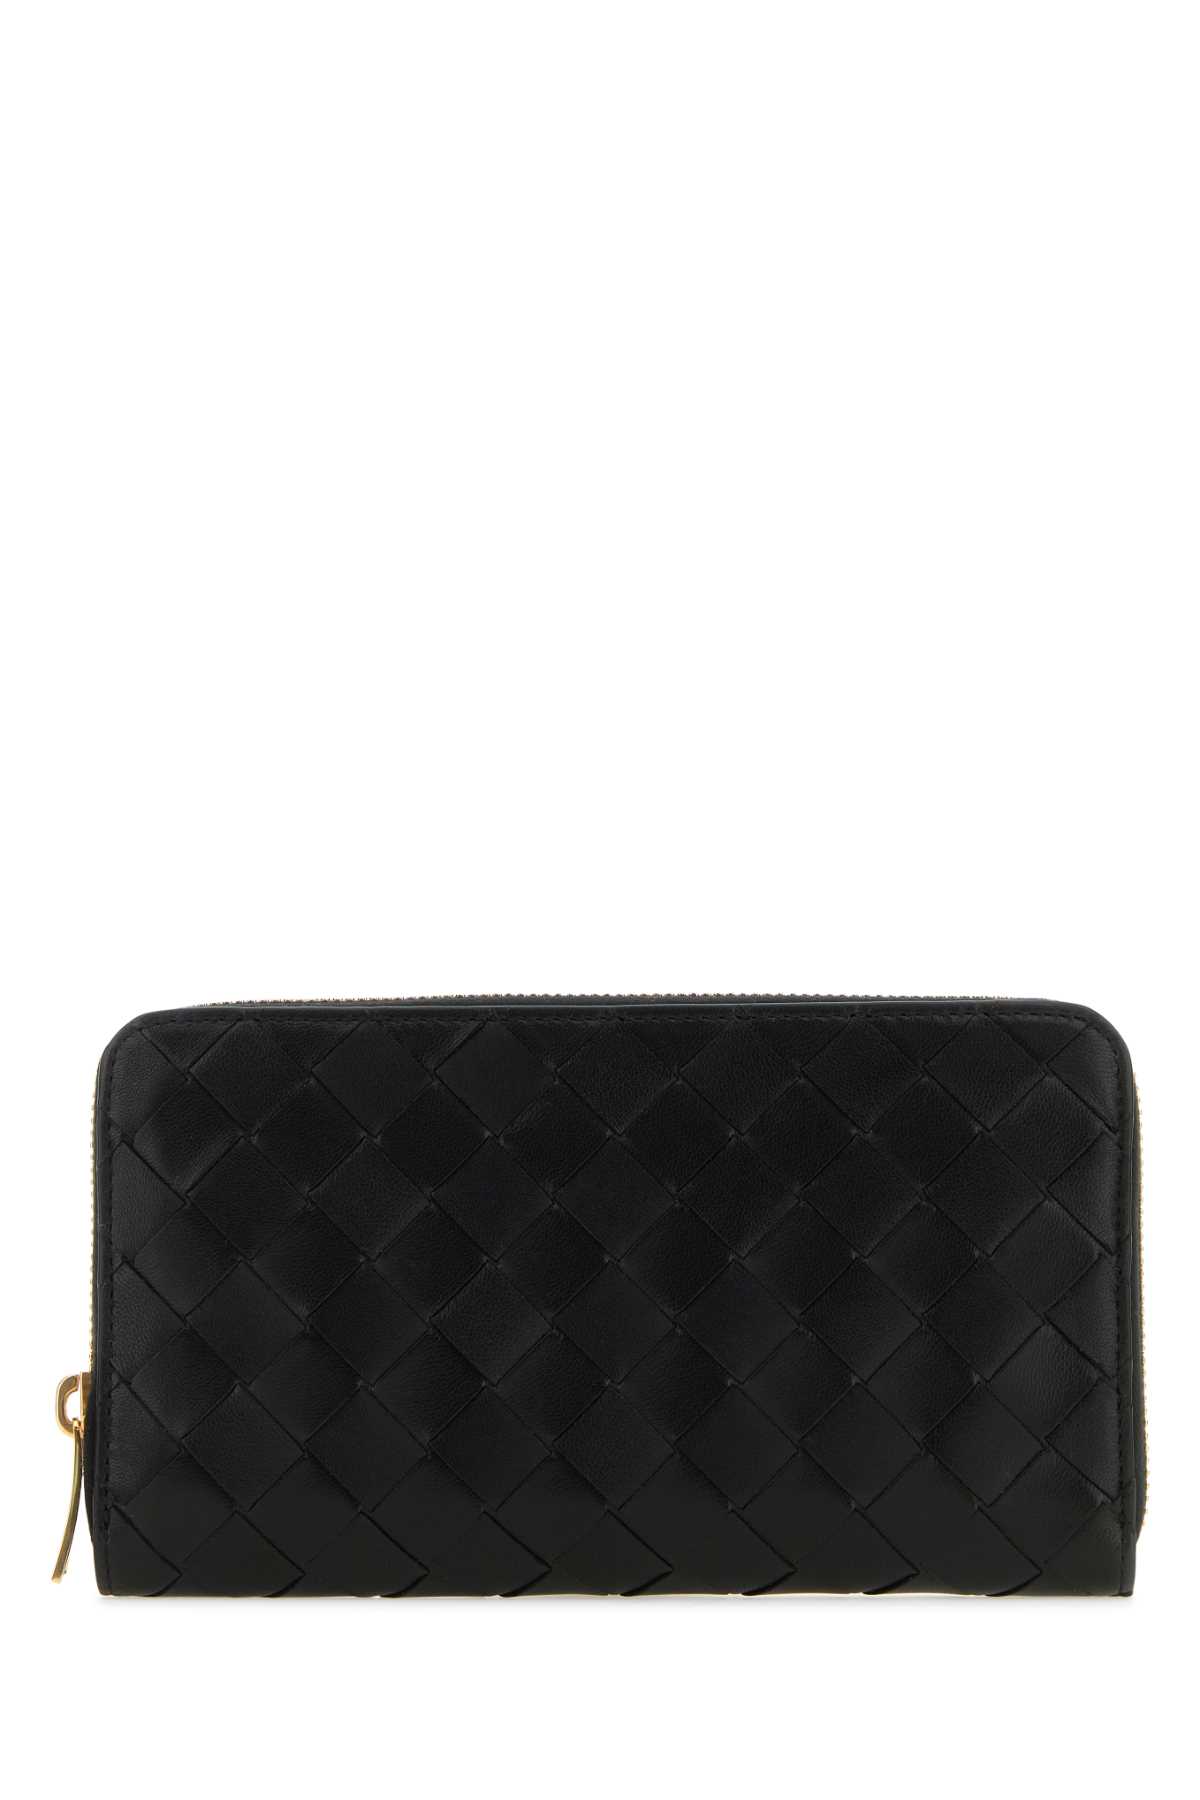 Shop Bottega Veneta Black Nappa Leather Wallet In Blackgold